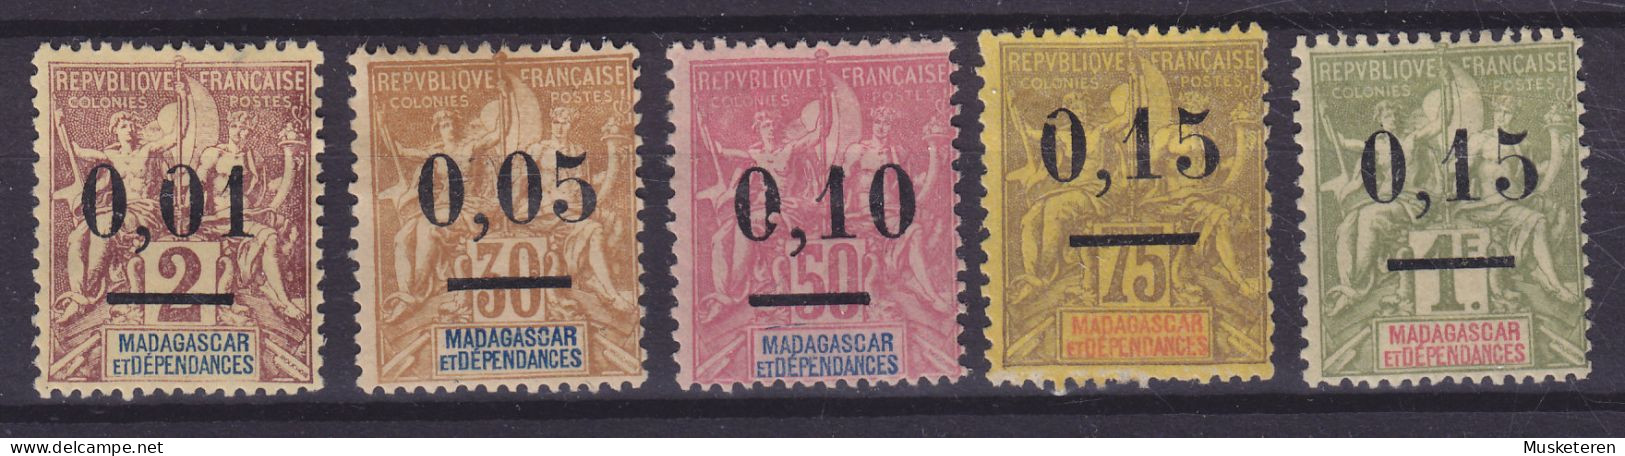 Madagascar 1902 Mi. 51-55 Kolonial-Allegorie Overprinted M. Aufdruck & 4x ERROR Variety In Overprint, MH* (7 Scans) - Nuovi